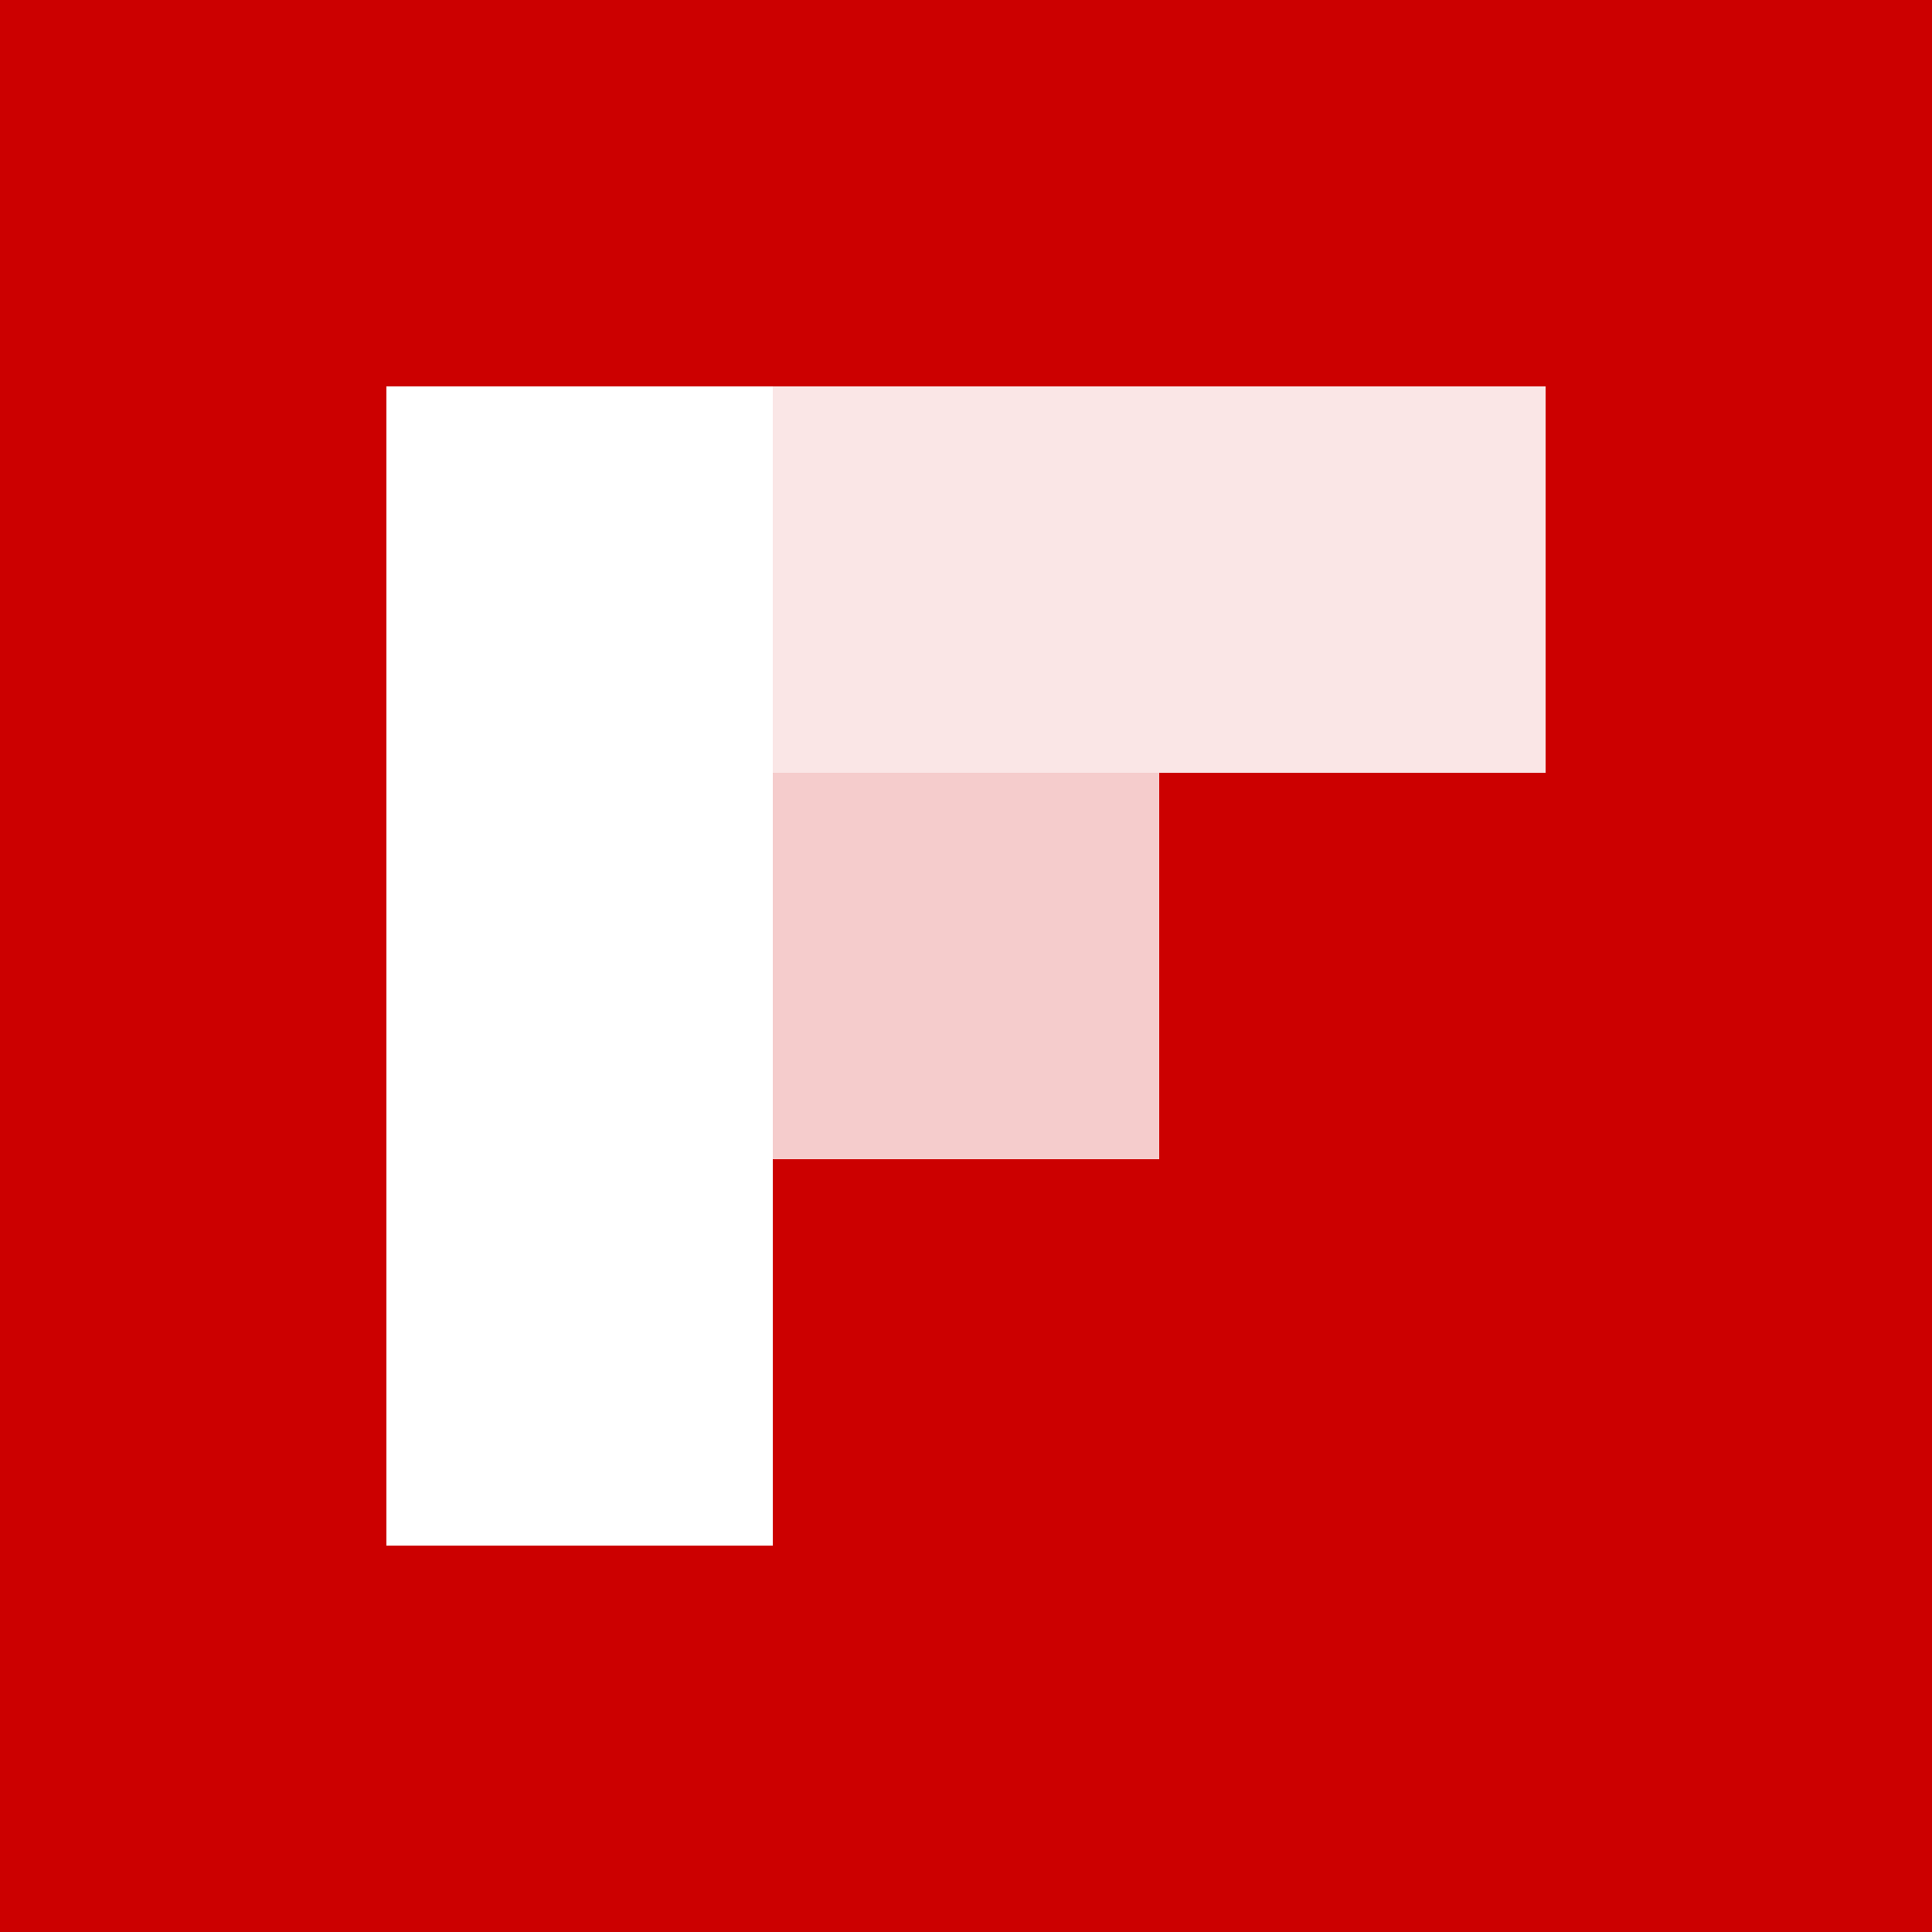 Flipboard Logo - File:Flipboard logo.svg - Wikimedia Commons